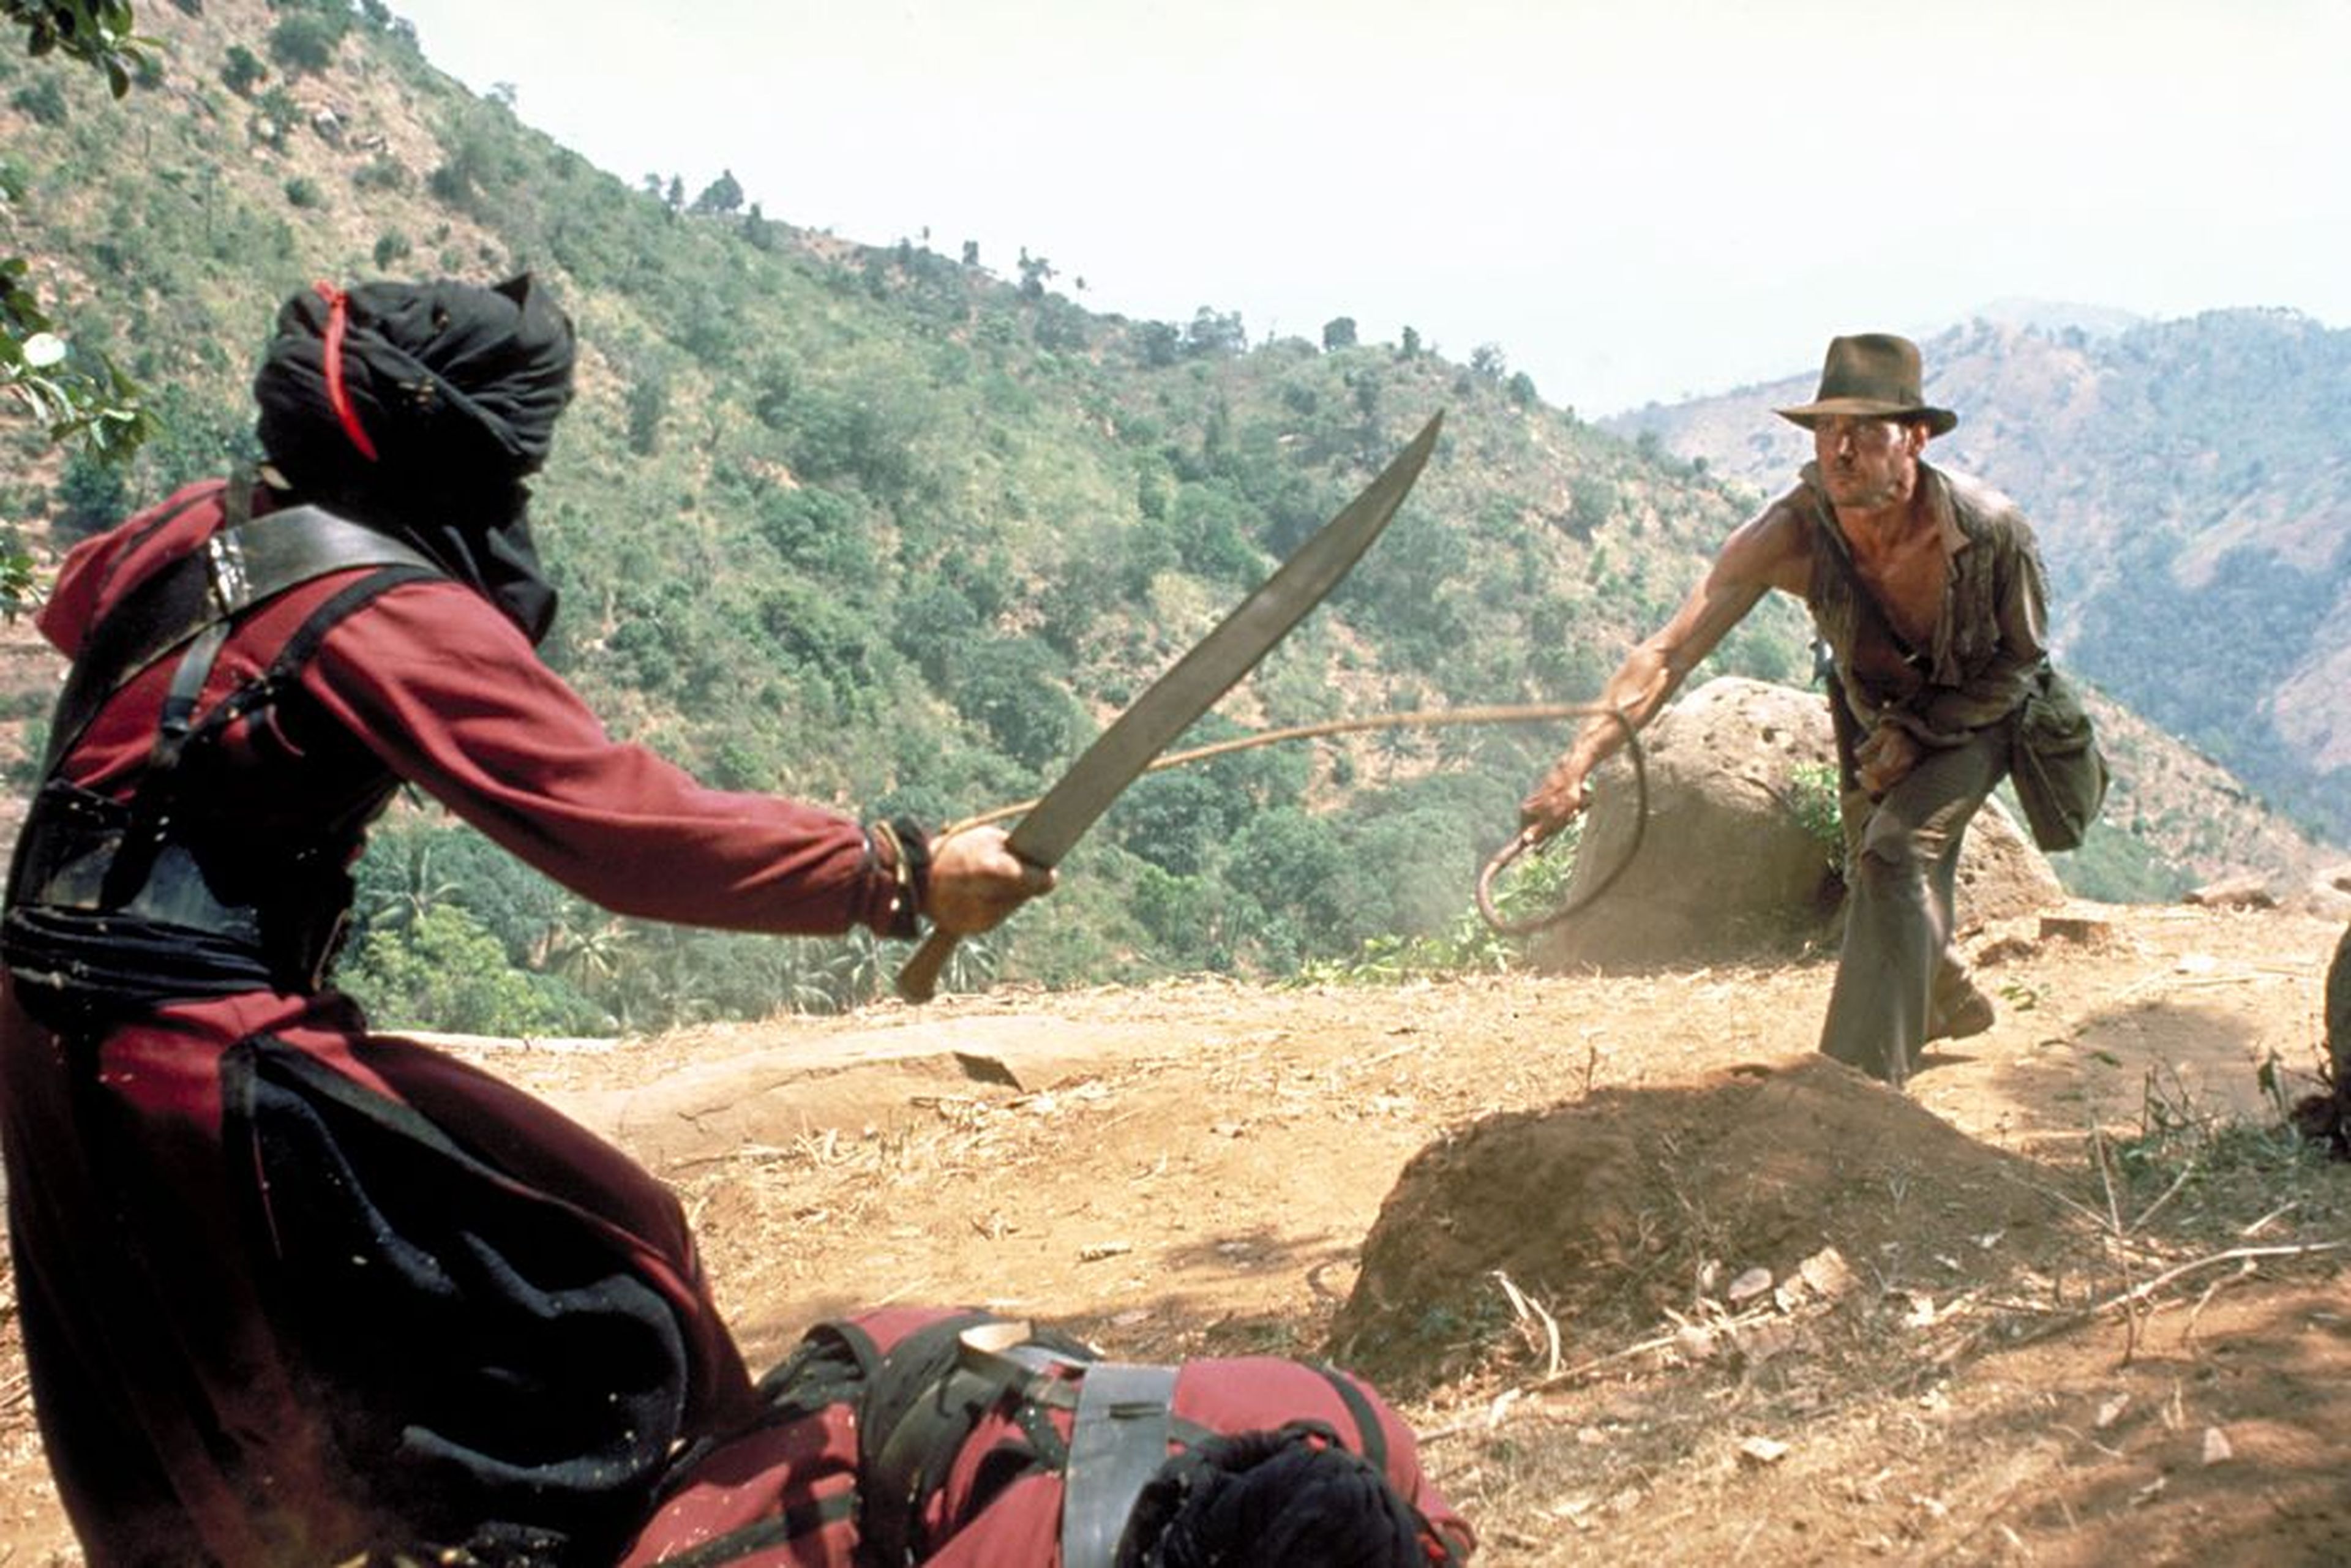 Crítica de Indiana Jones y el templo maldito - Especial cine de los 80